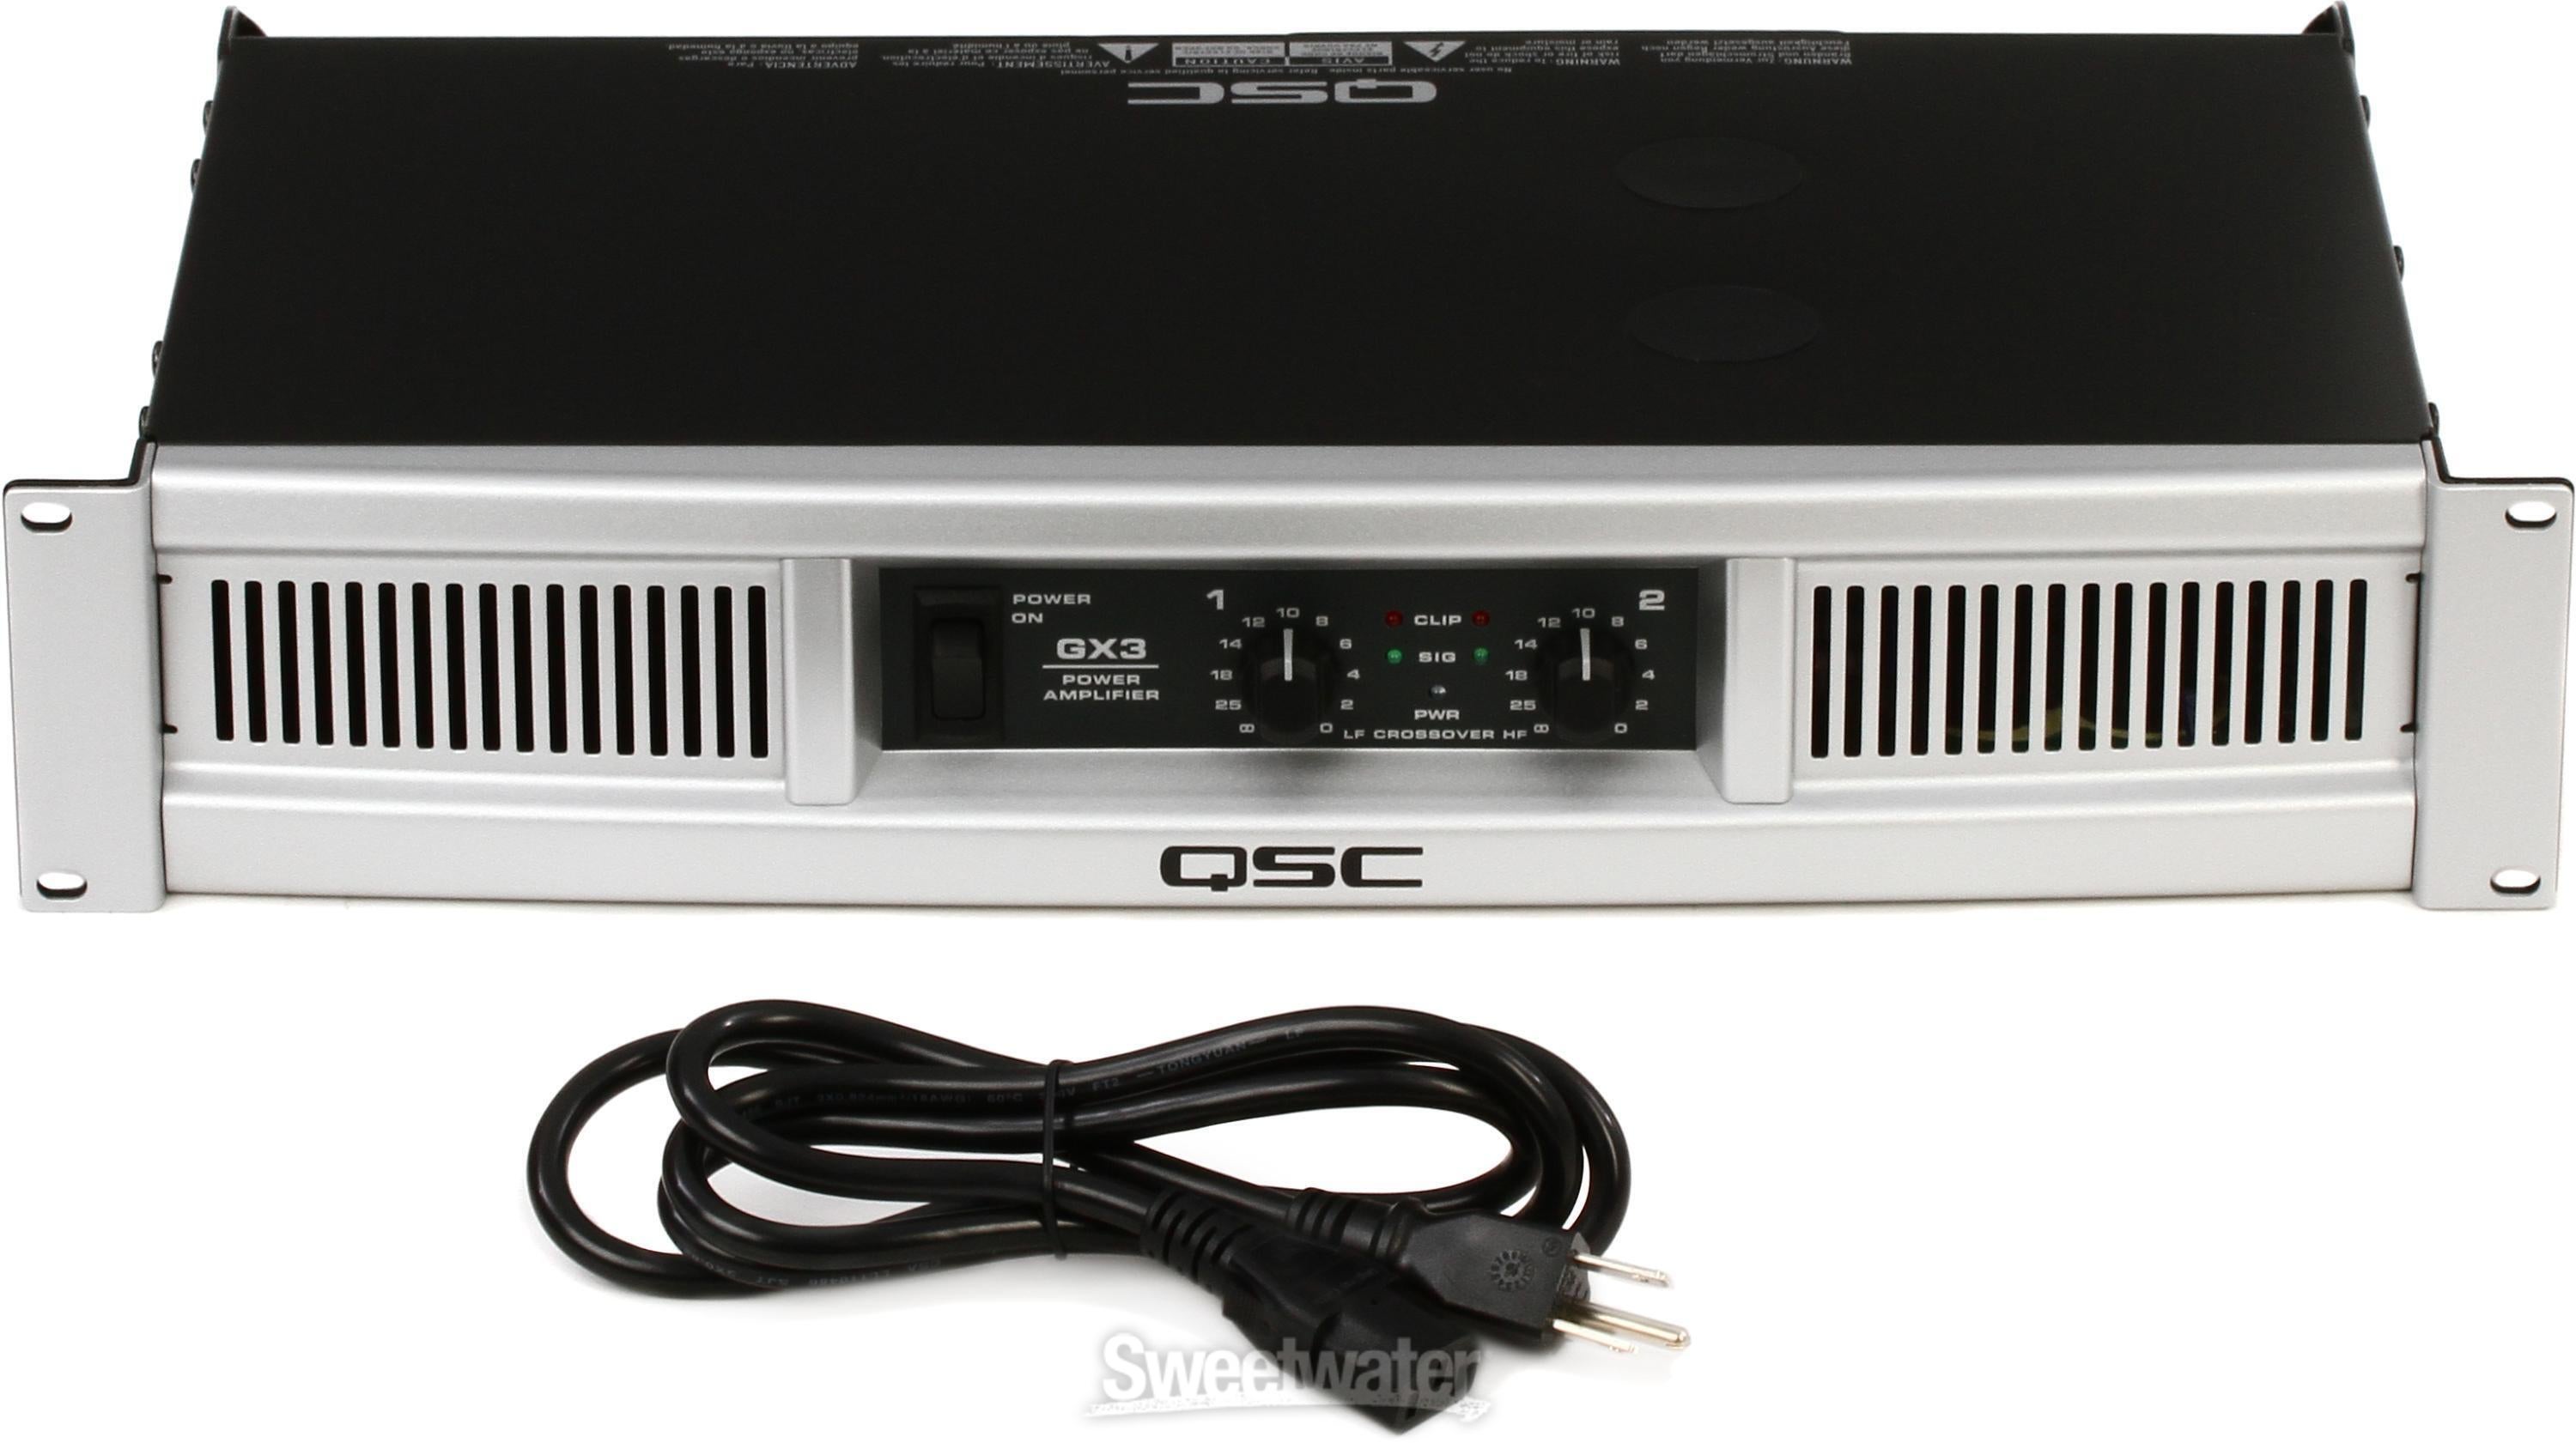 QSC GX3 425W 2-channel Power Amplifier | Sweetwater